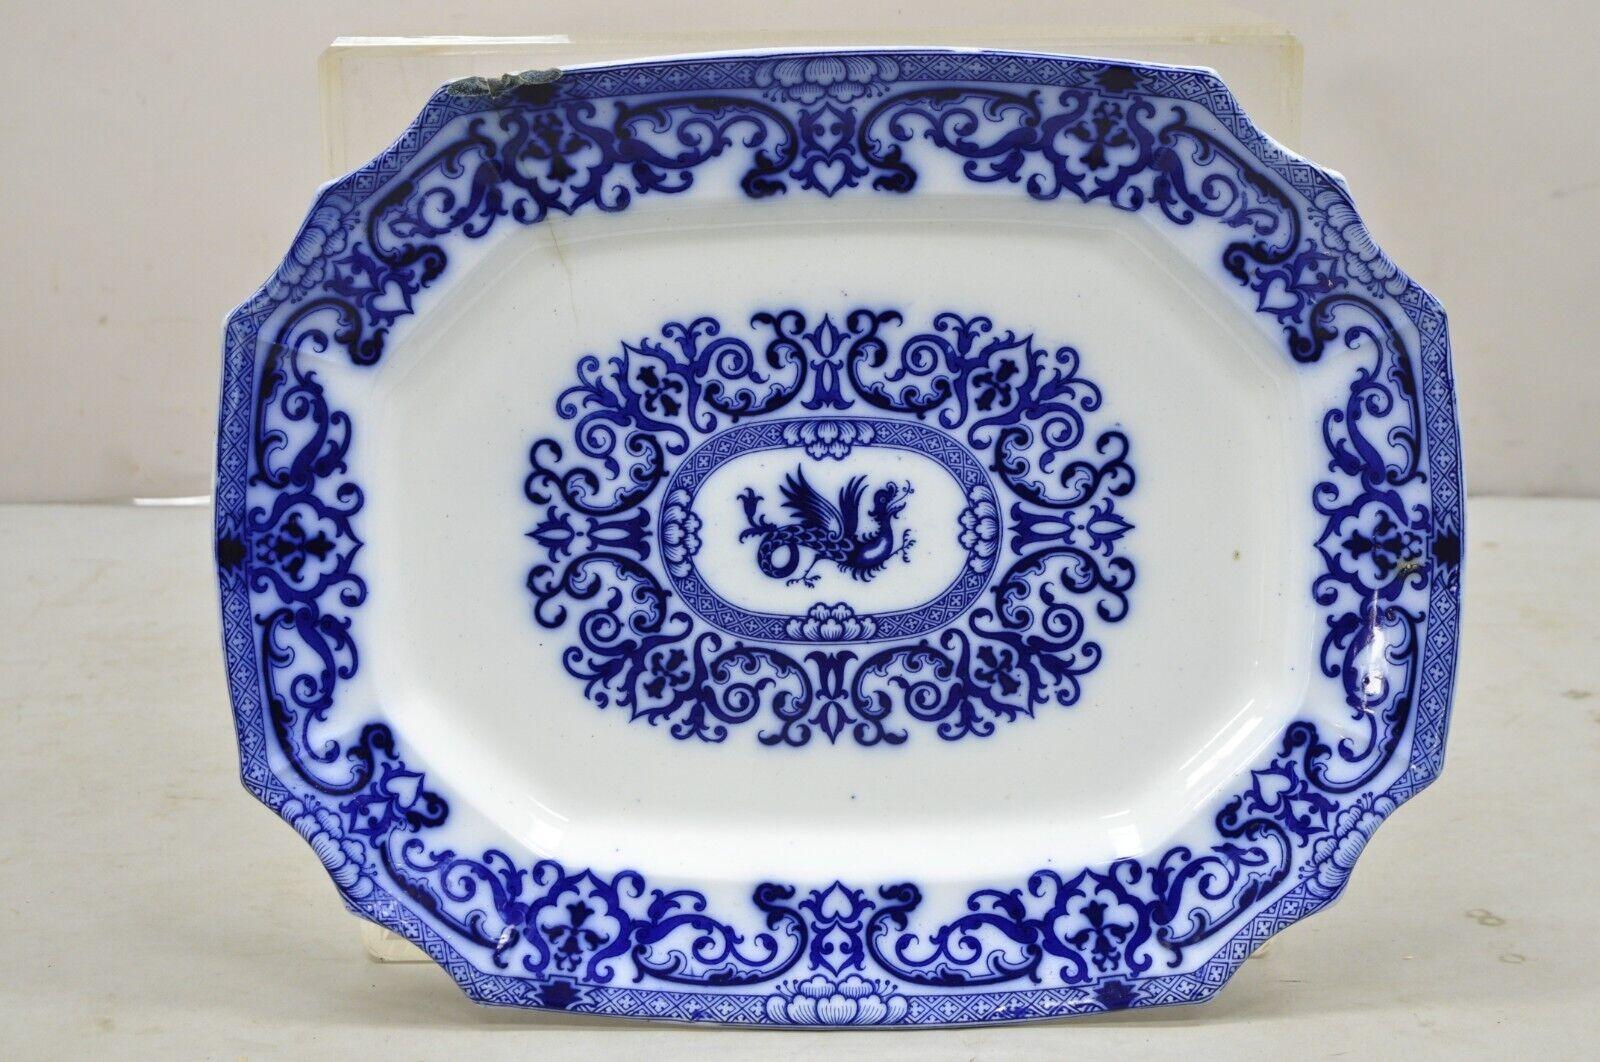 Antike englische Flow Blue and White Transferware Ironstone Large Platter Dish mit chinesischem Drachen. CIRCA 1800er Jahre. Abmessungen: 2